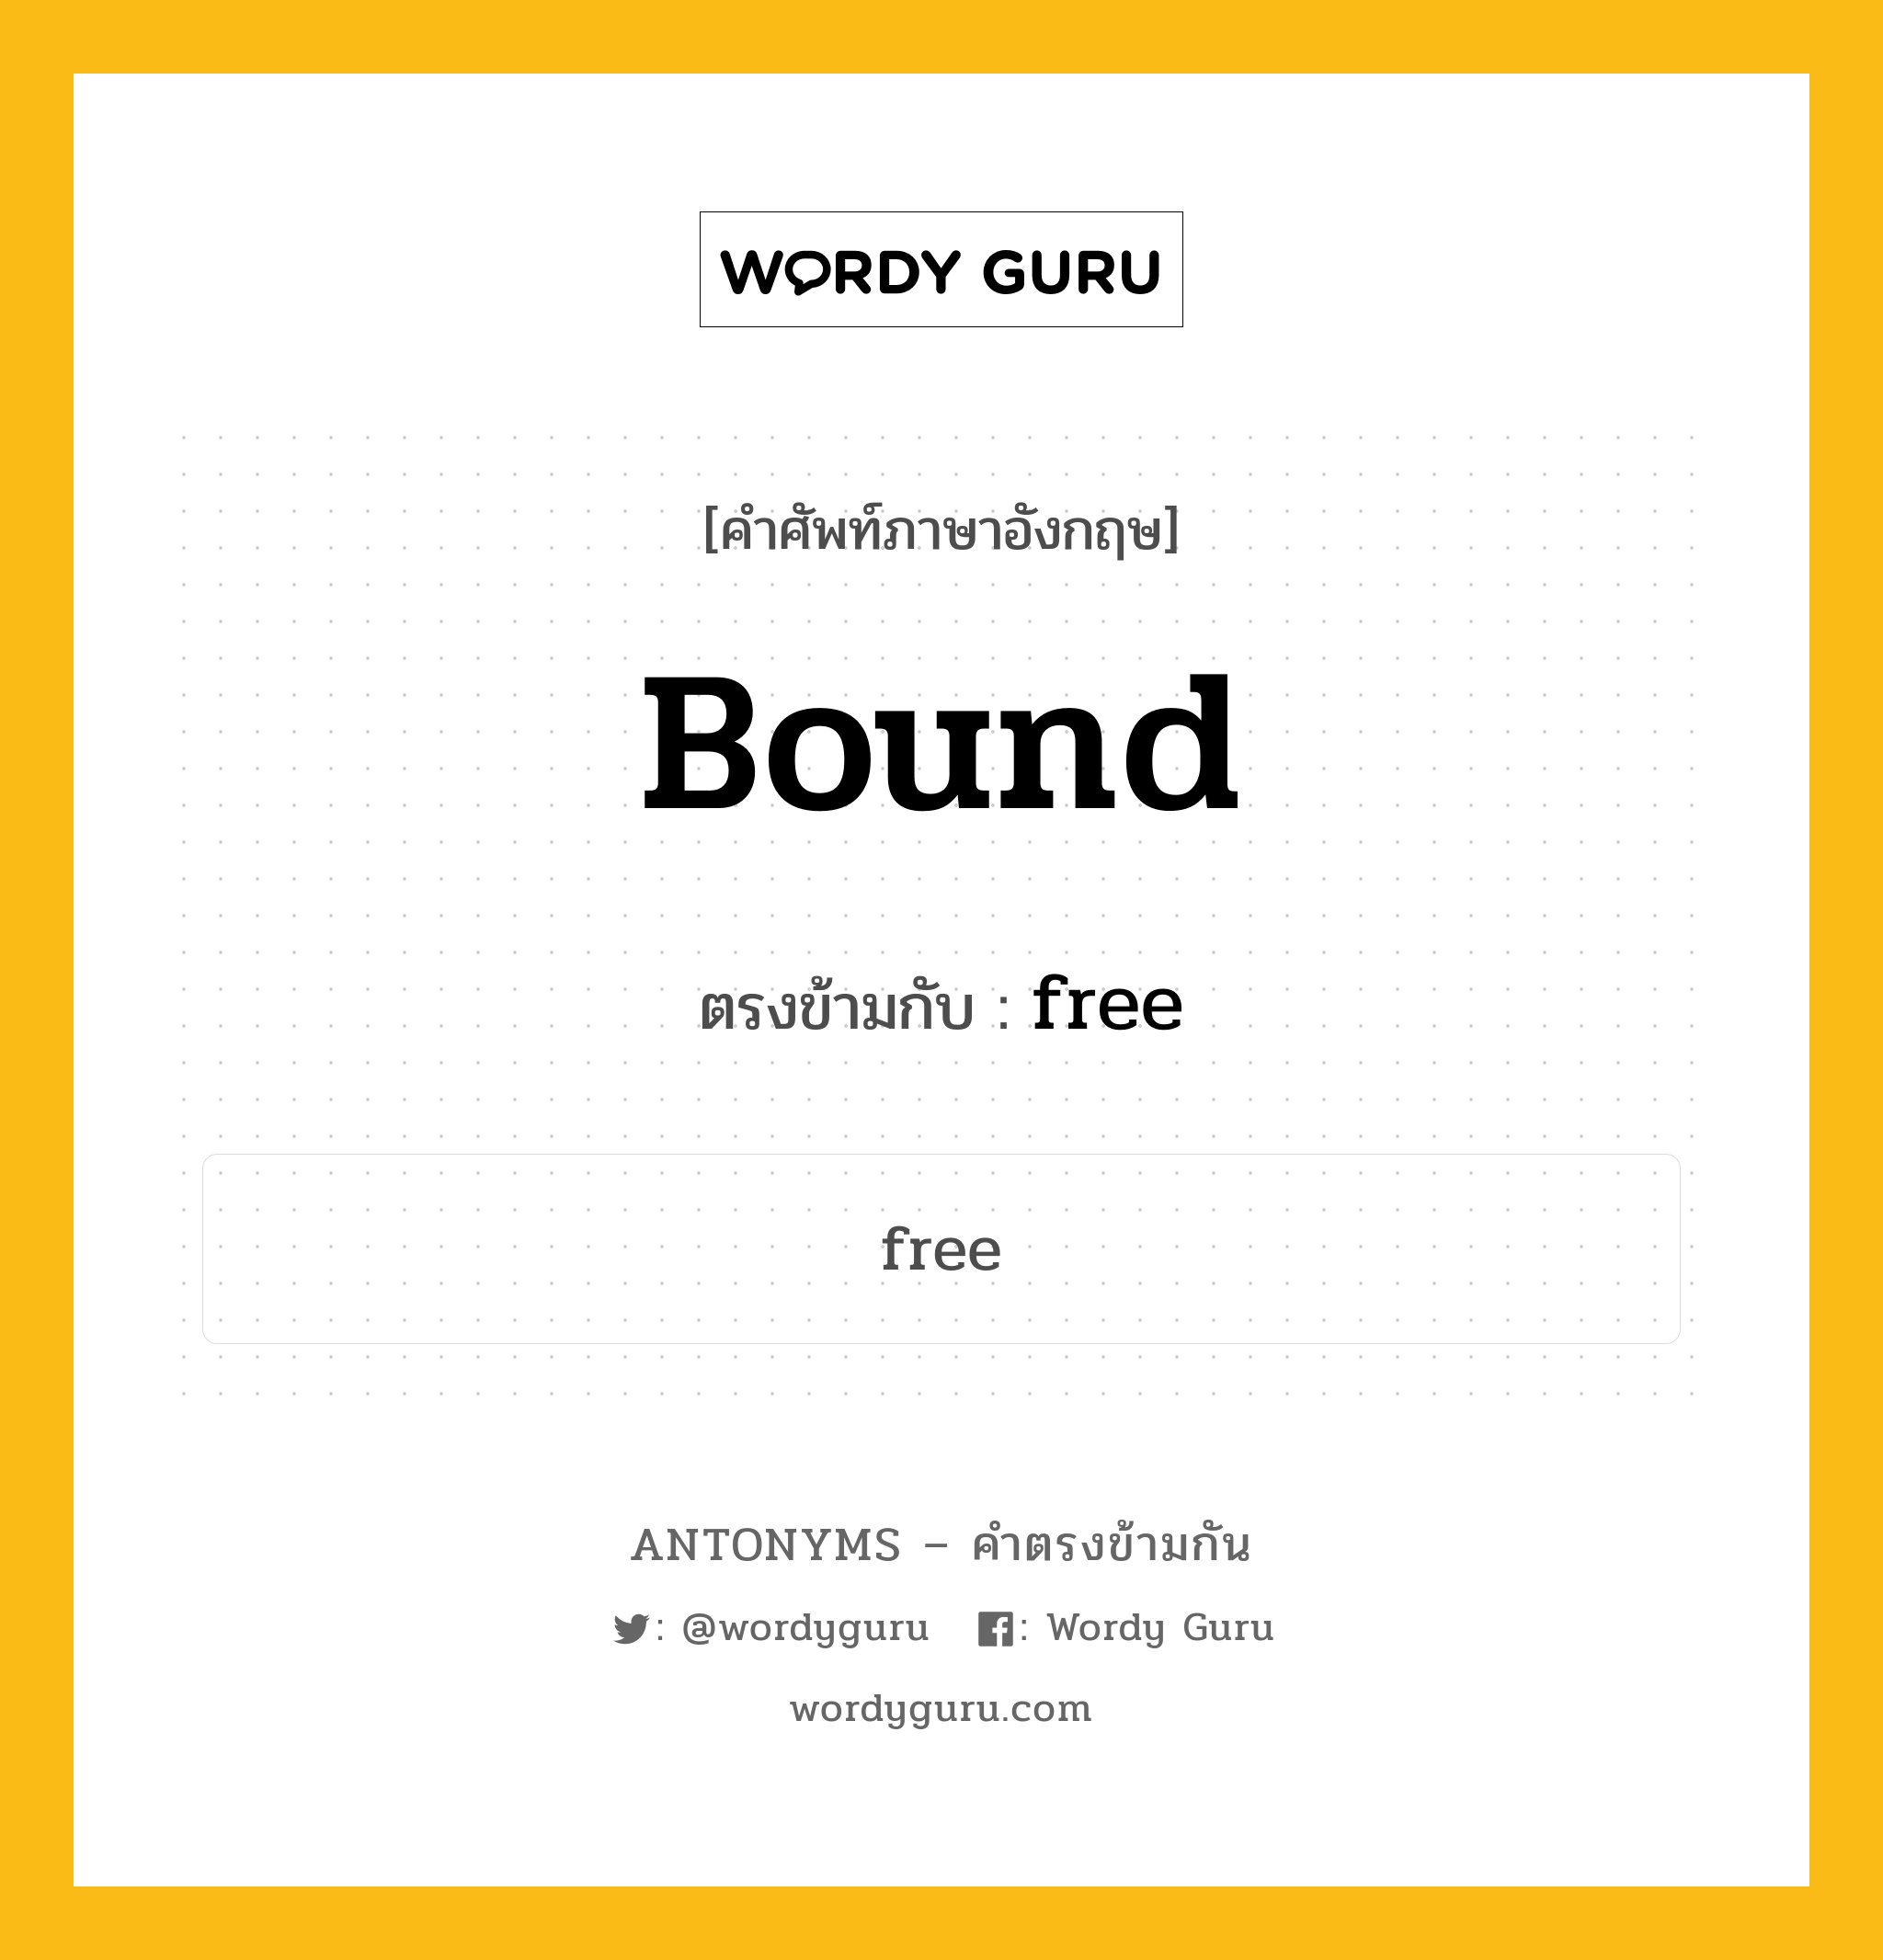 bound เป็นคำตรงข้ามกับคำไหนบ้าง?, คำศัพท์ภาษาอังกฤษ bound ตรงข้ามกับ free หมวด free